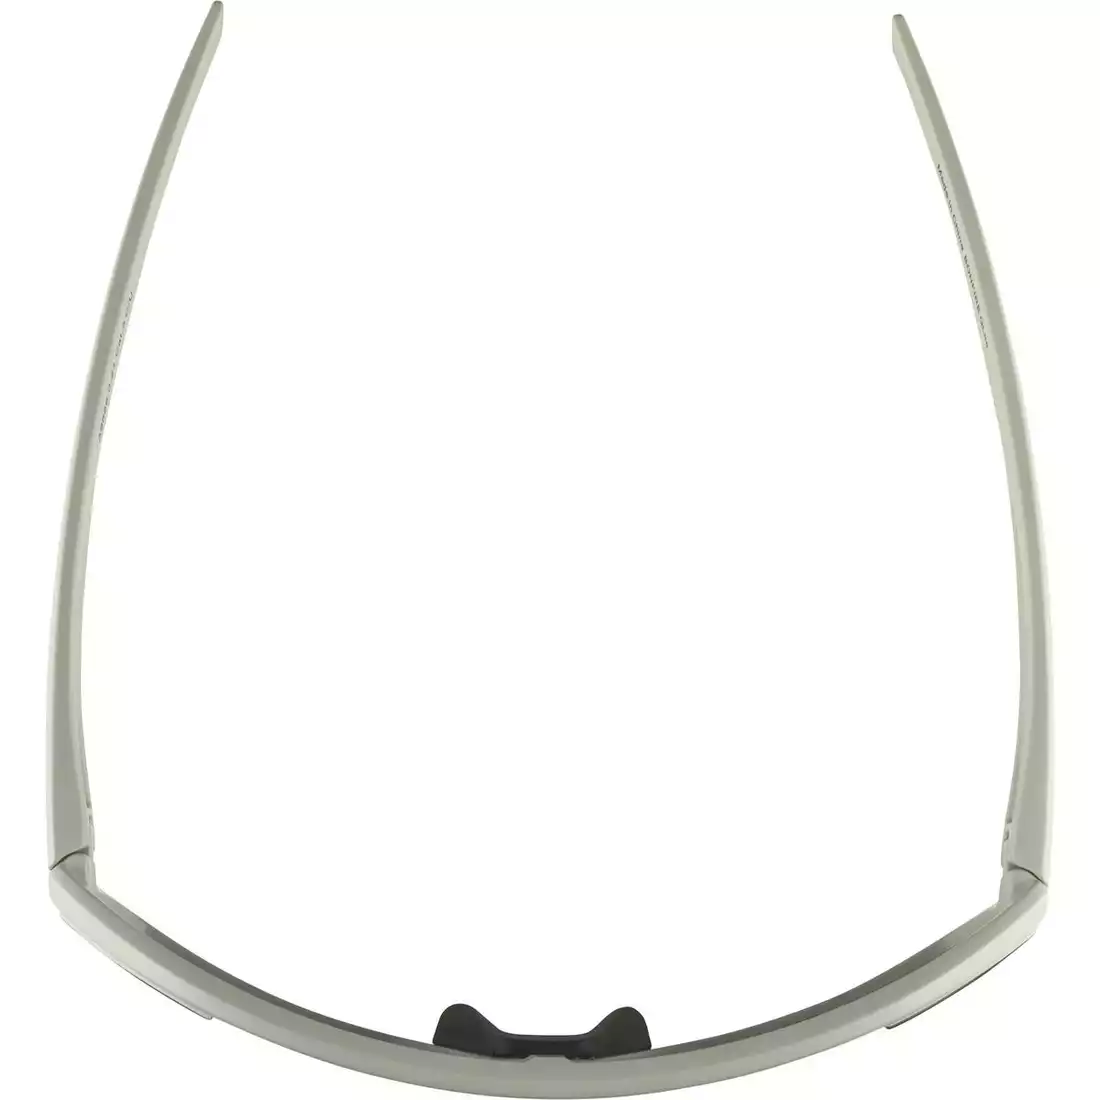 ALPINA BONFIRE Q-LITE Sportovní polarizační brýle, cool grey matt / silver mirror